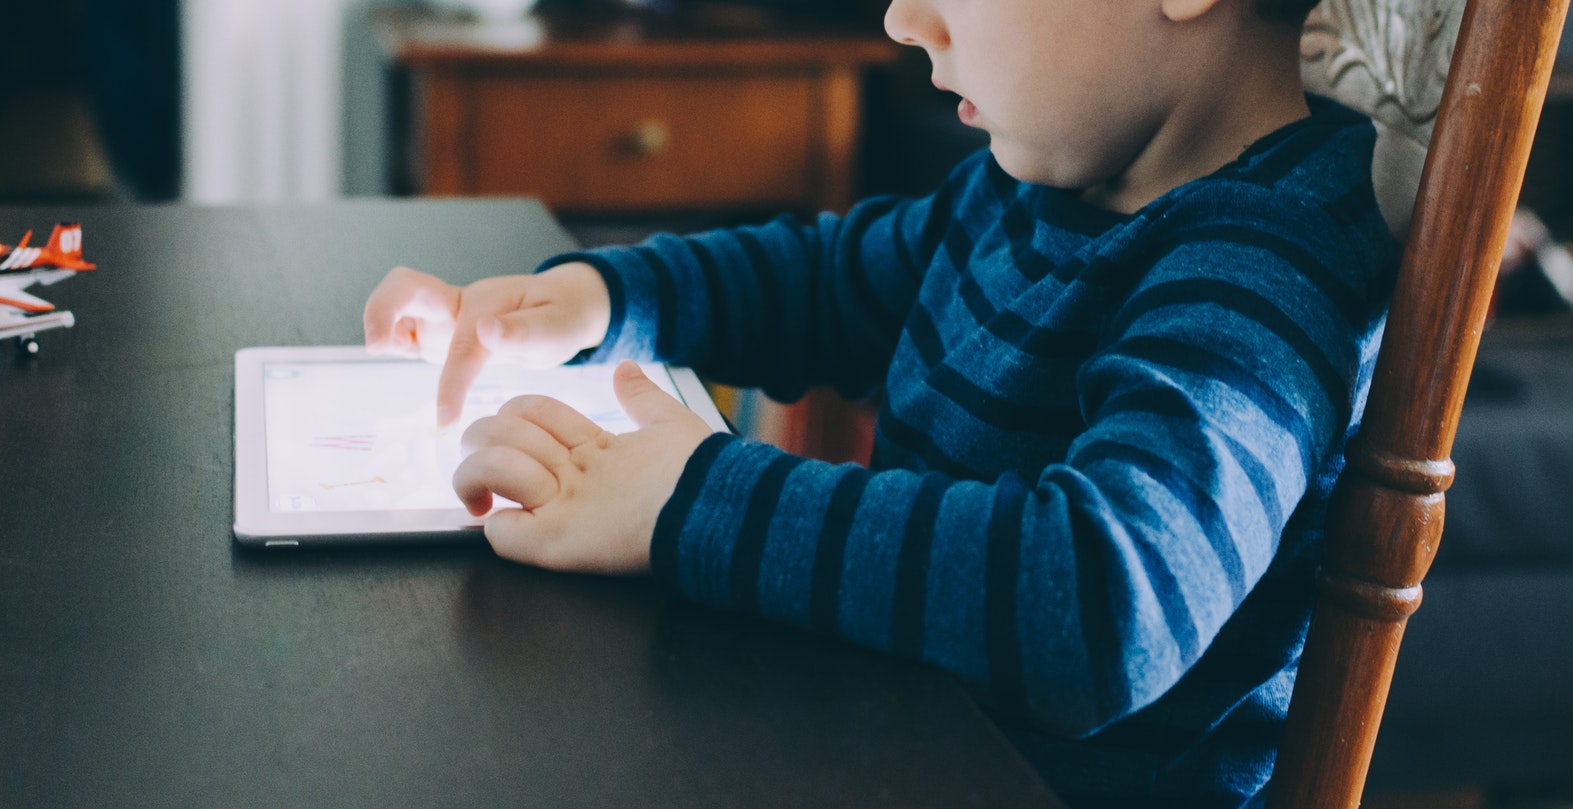 Hoe houden we iPad-gebruik onder kinderen beperkt en veilig?